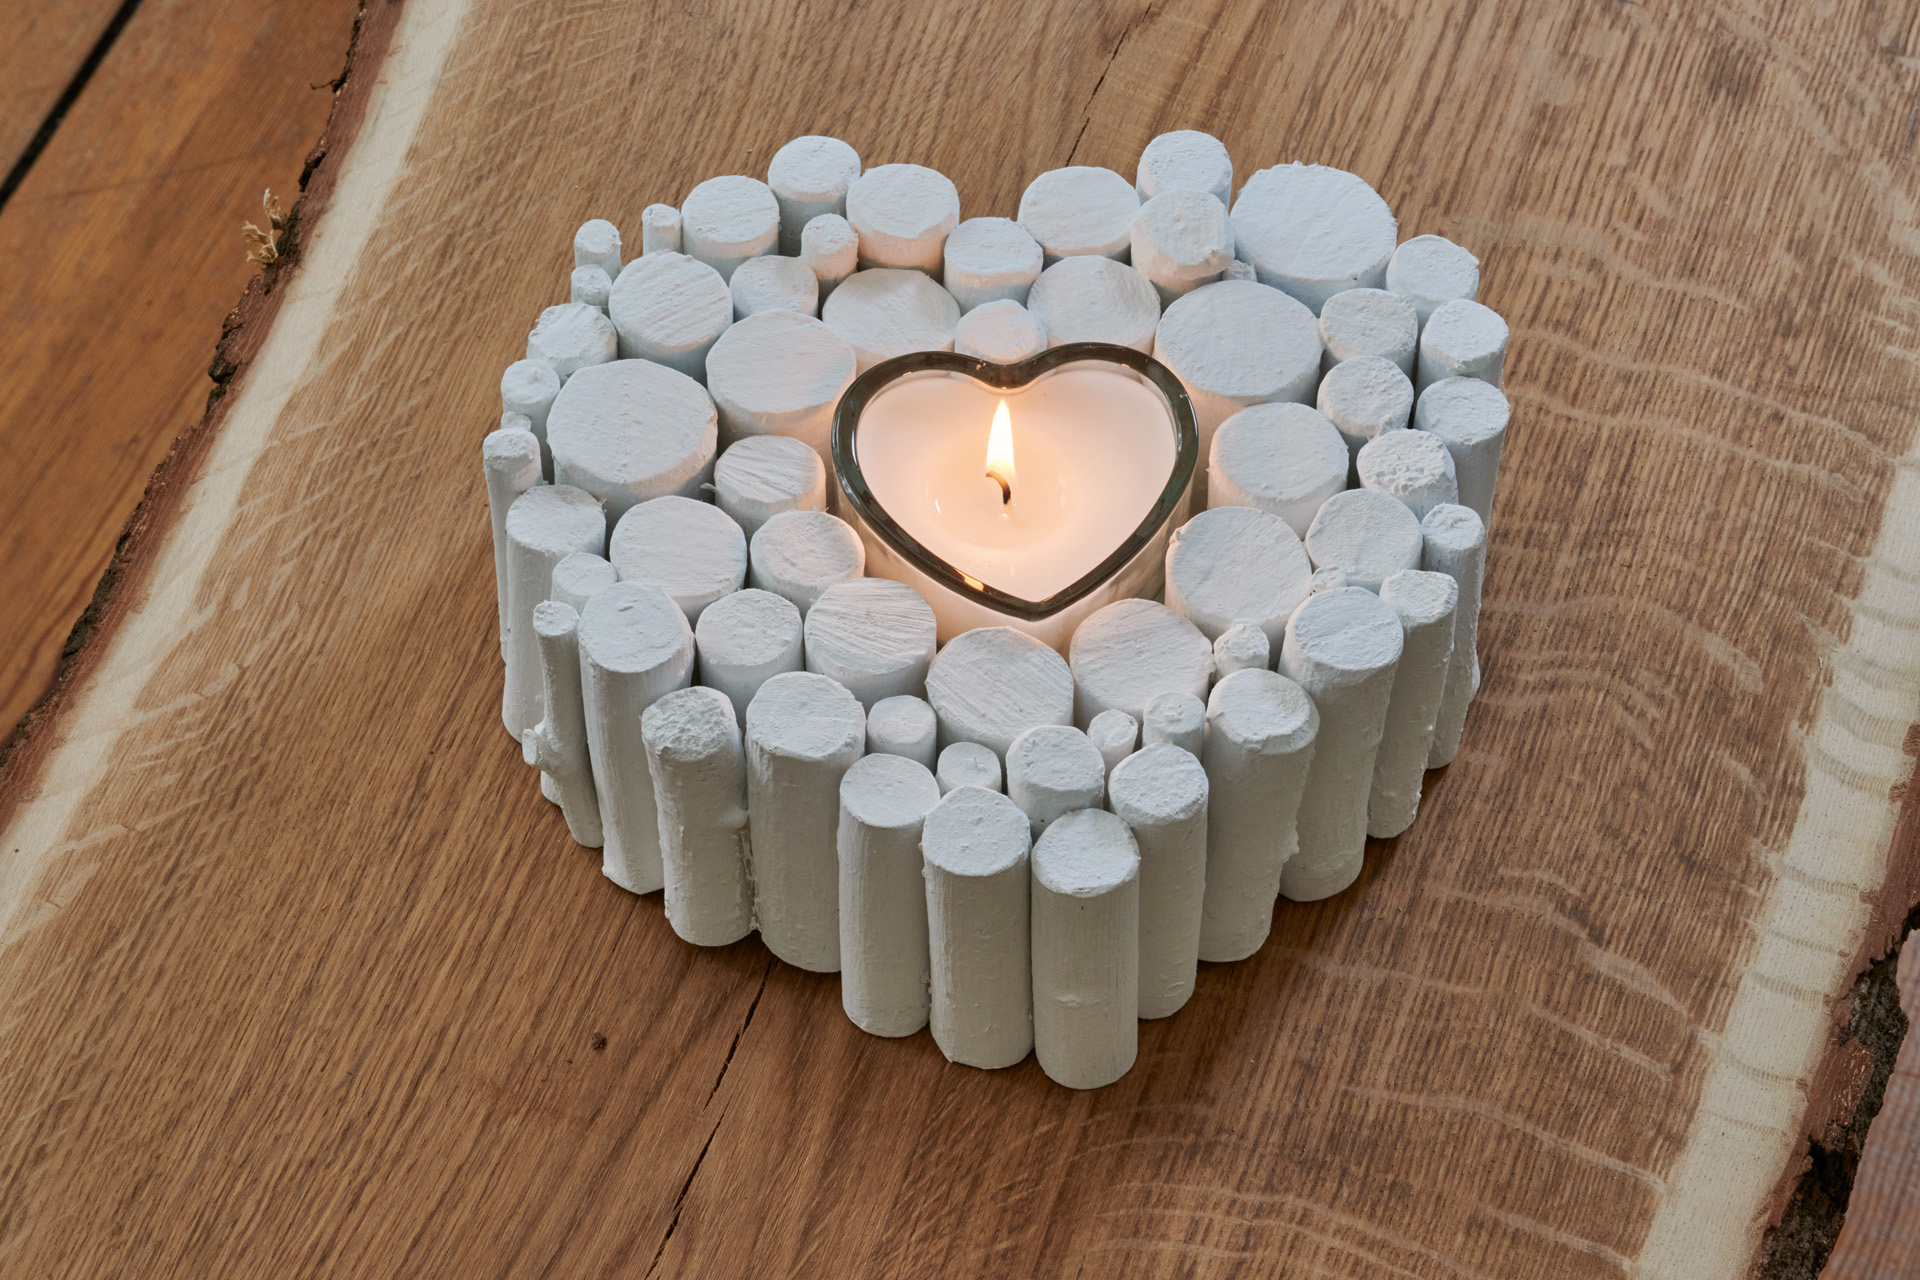 Ornamento de bricolage em forma de coração de madeira feito a partir de um ramo, com uma vela